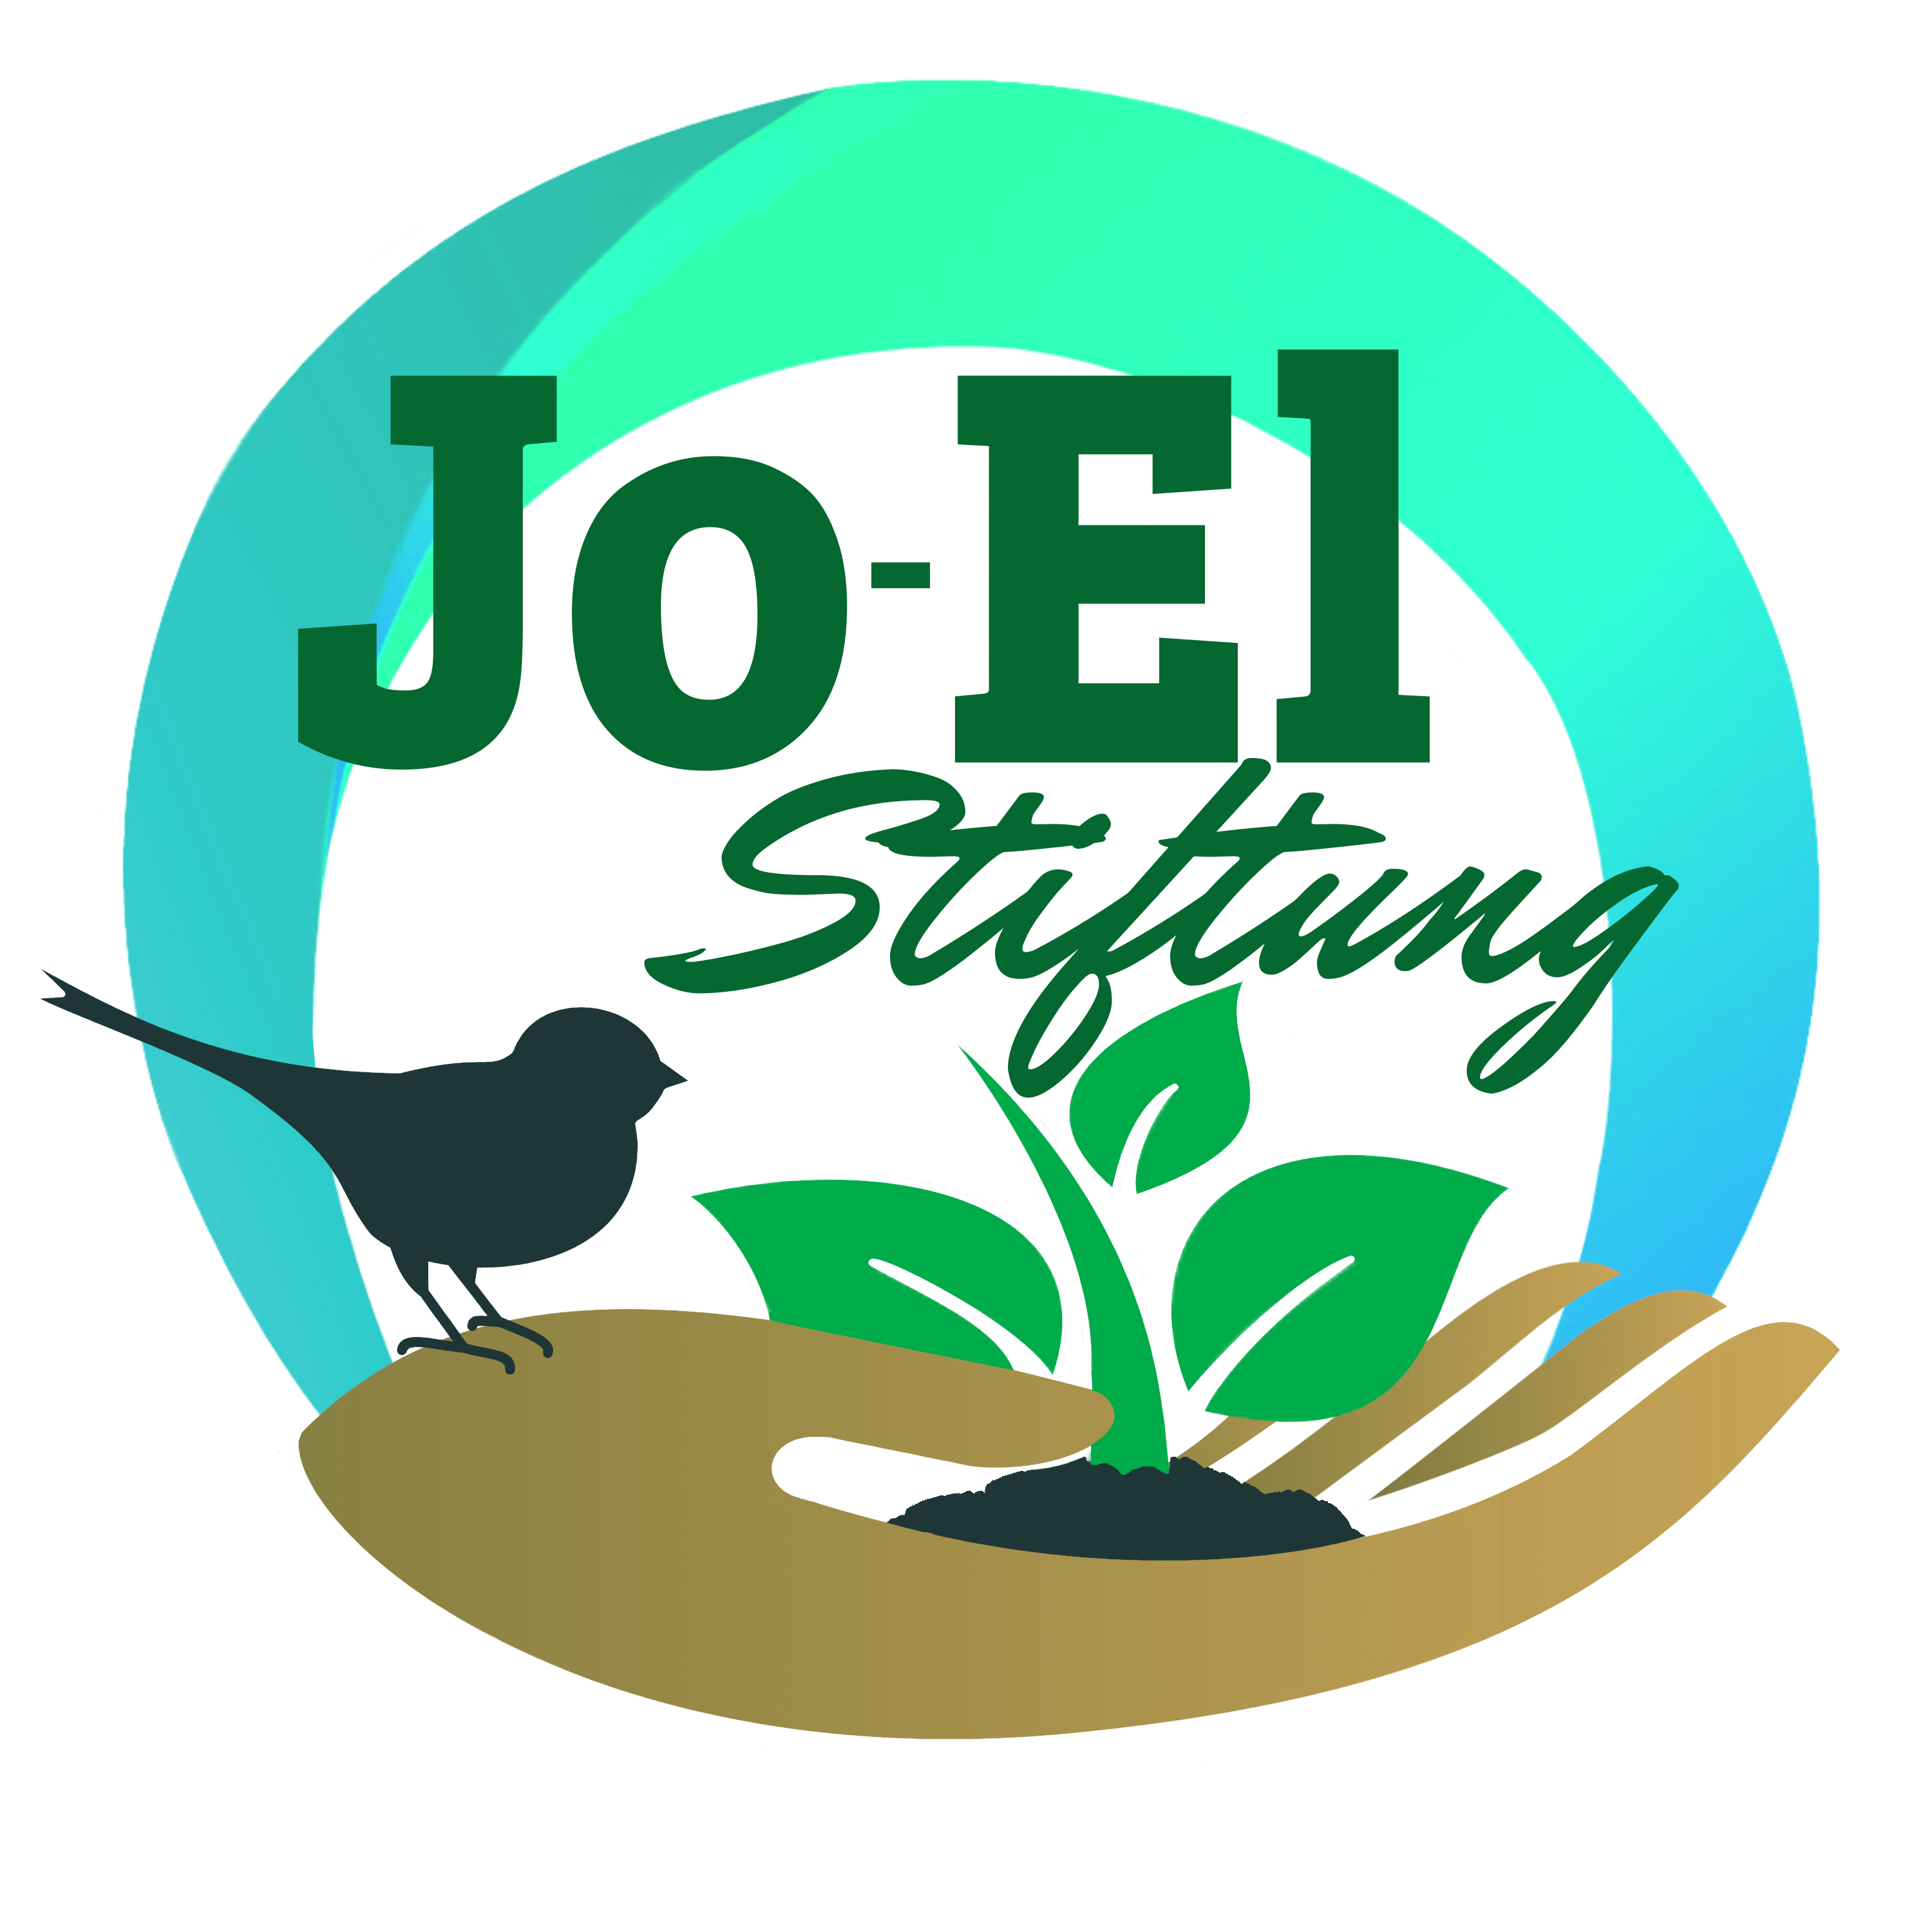 Jo-El Stiftung